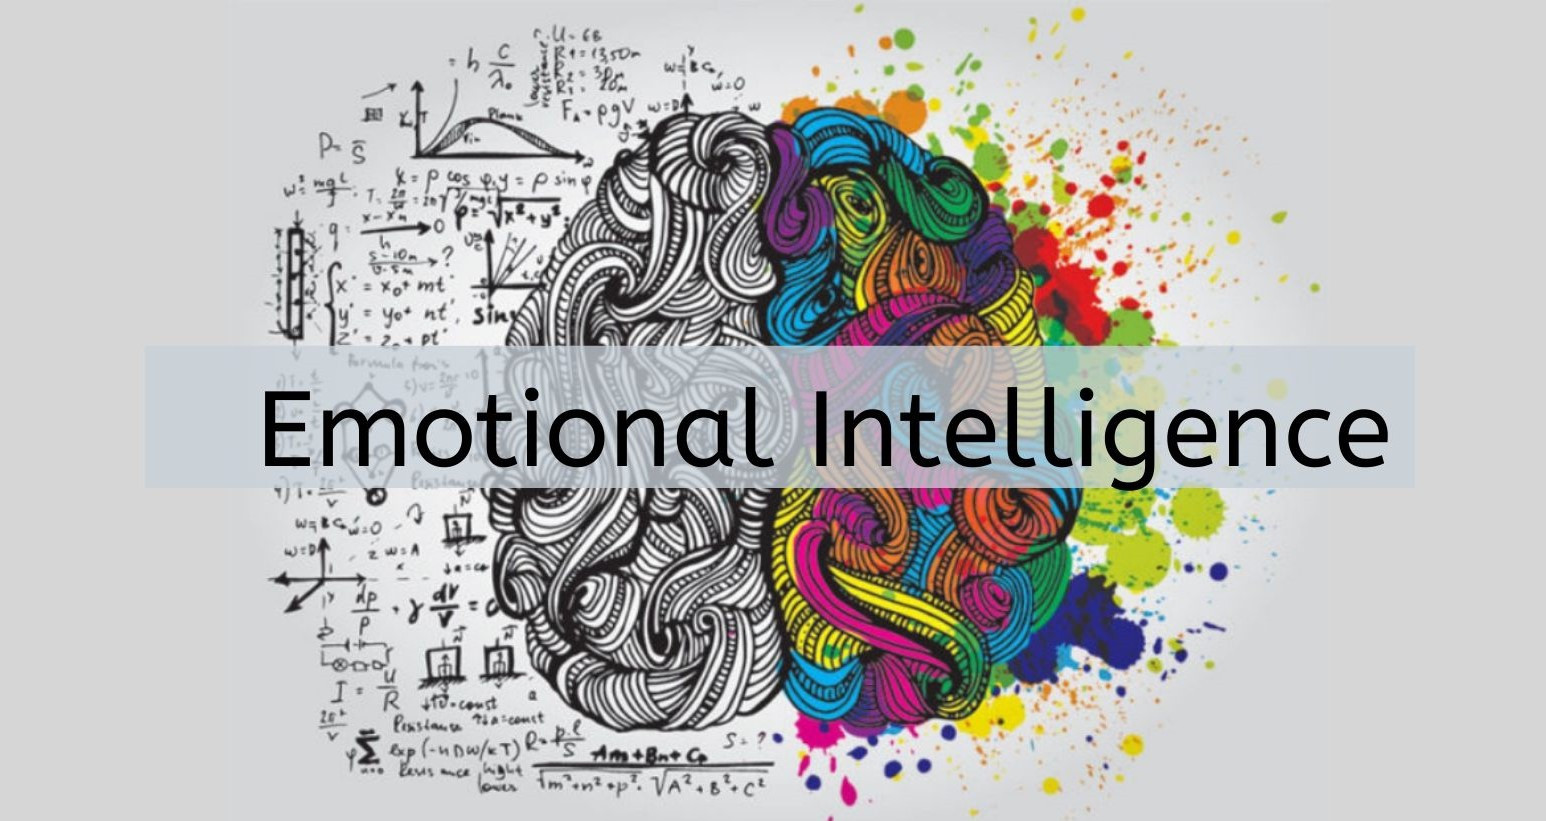 Power of EmotionalIntelligence